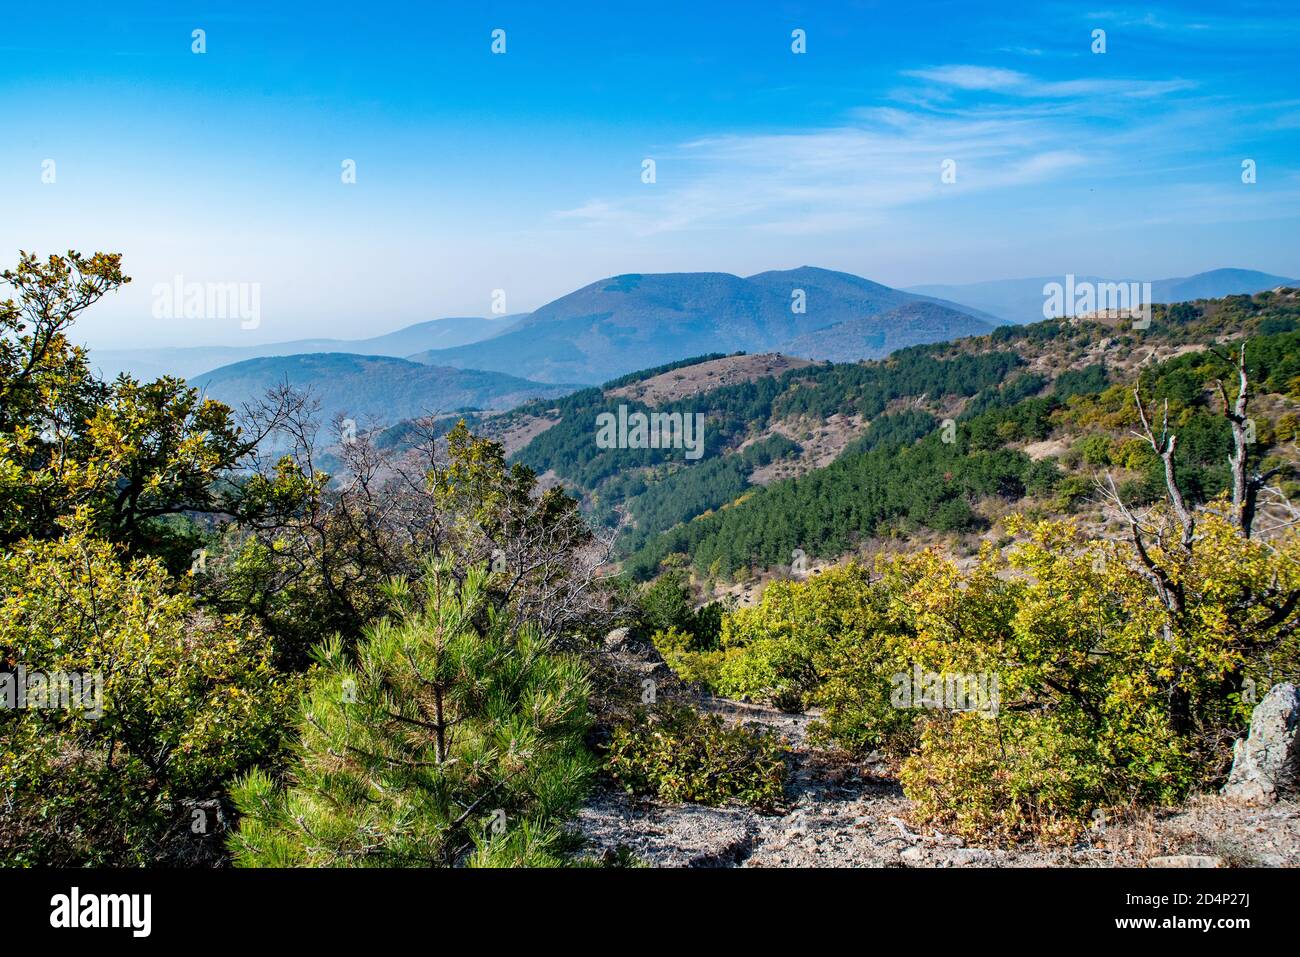 Paesaggio montano con pendii rocciosi e cespugli verdi e un picco alto nella distanza Foto Stock